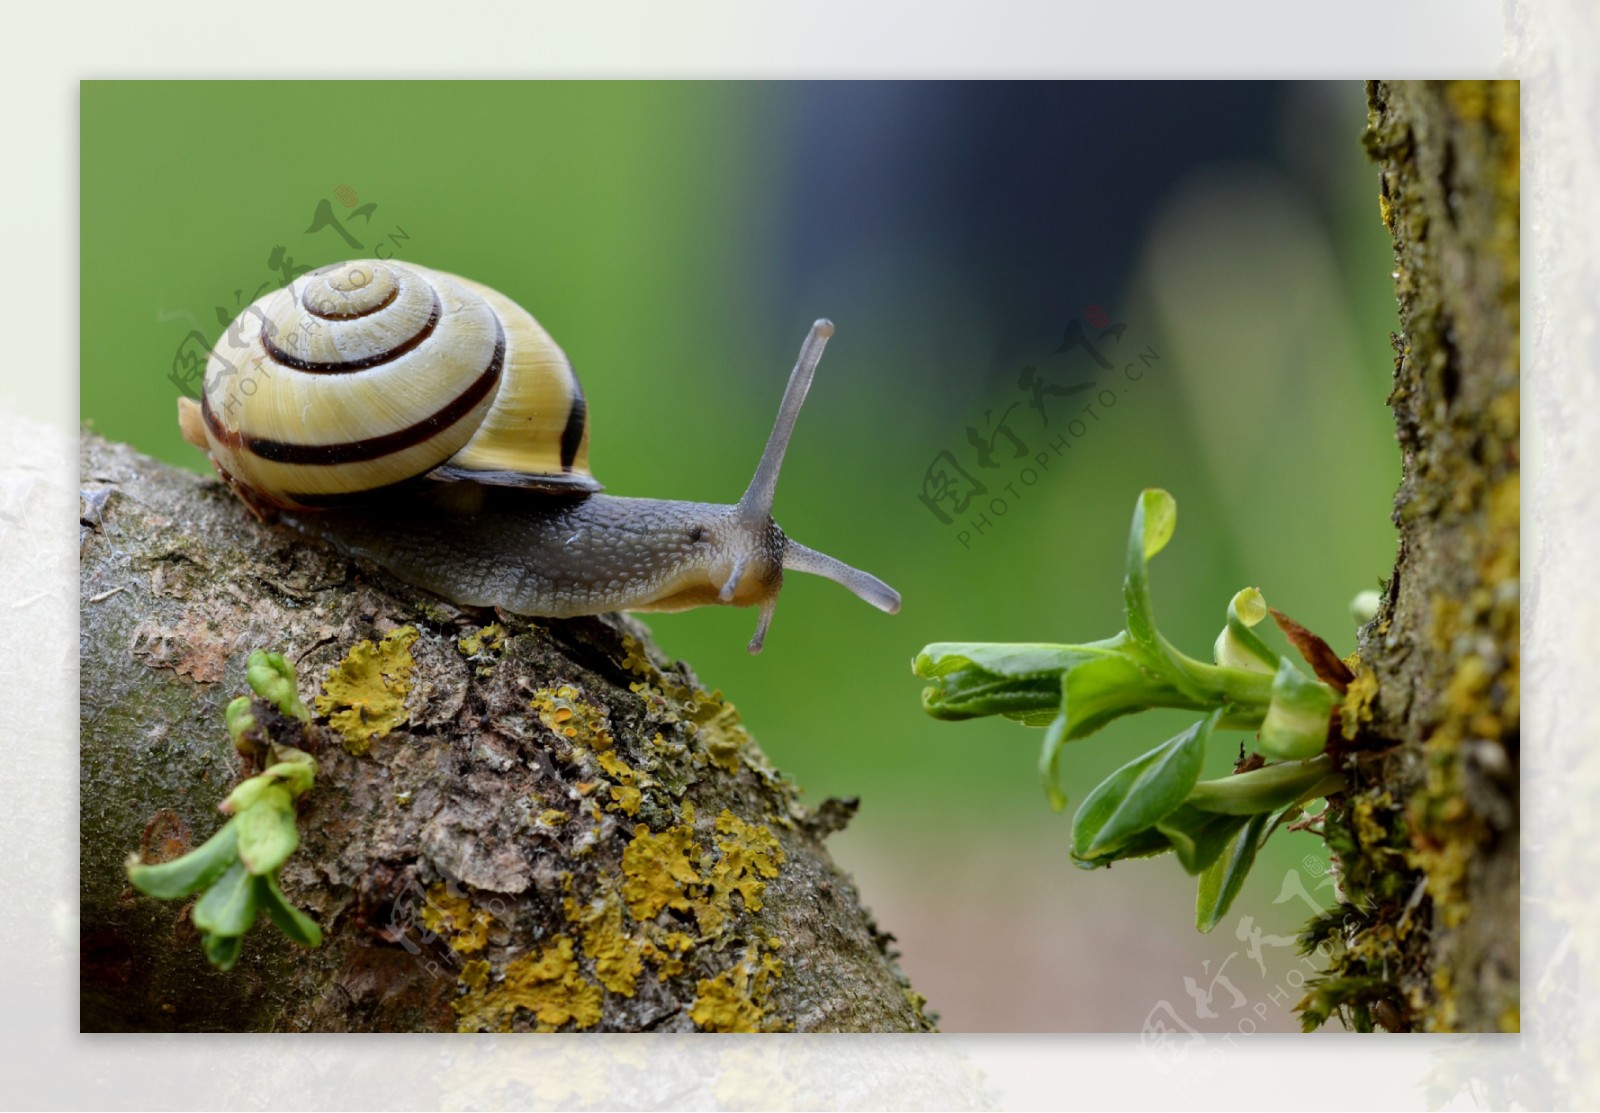 小蜗牛图片